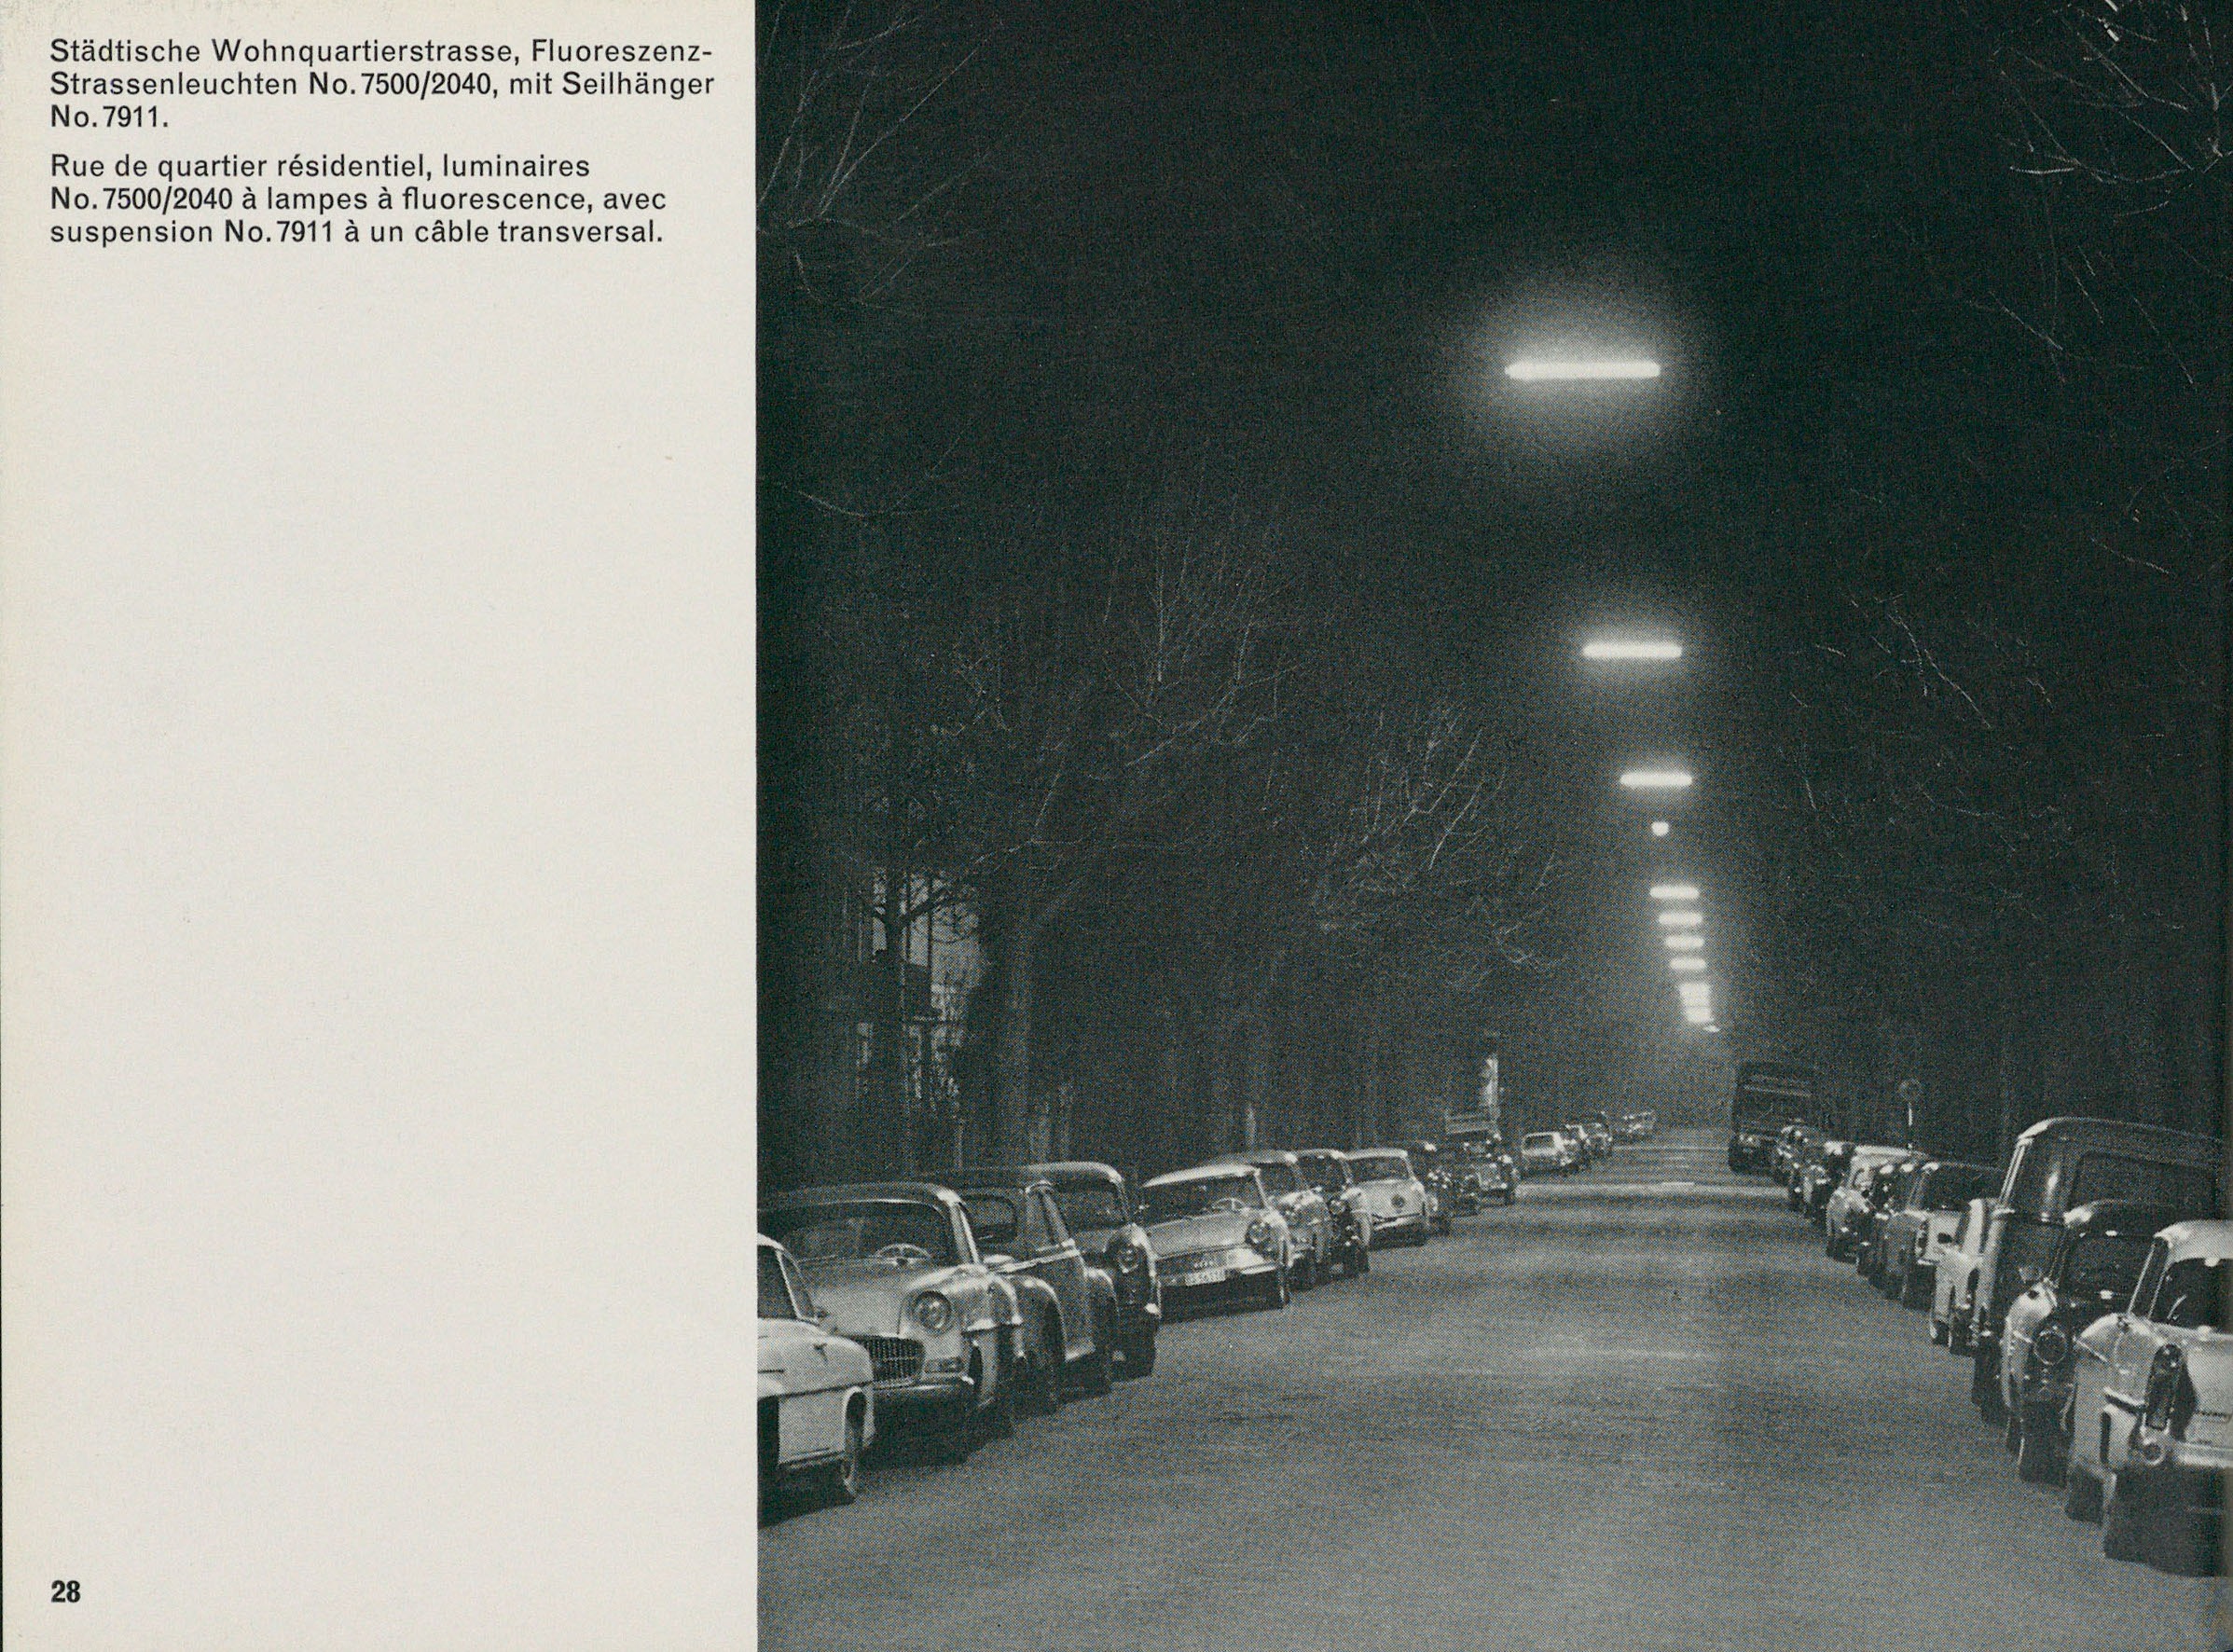 Fluoreszenz-Strassenleuchten in einer Quartierstrasse. Bild aus: Katalog 